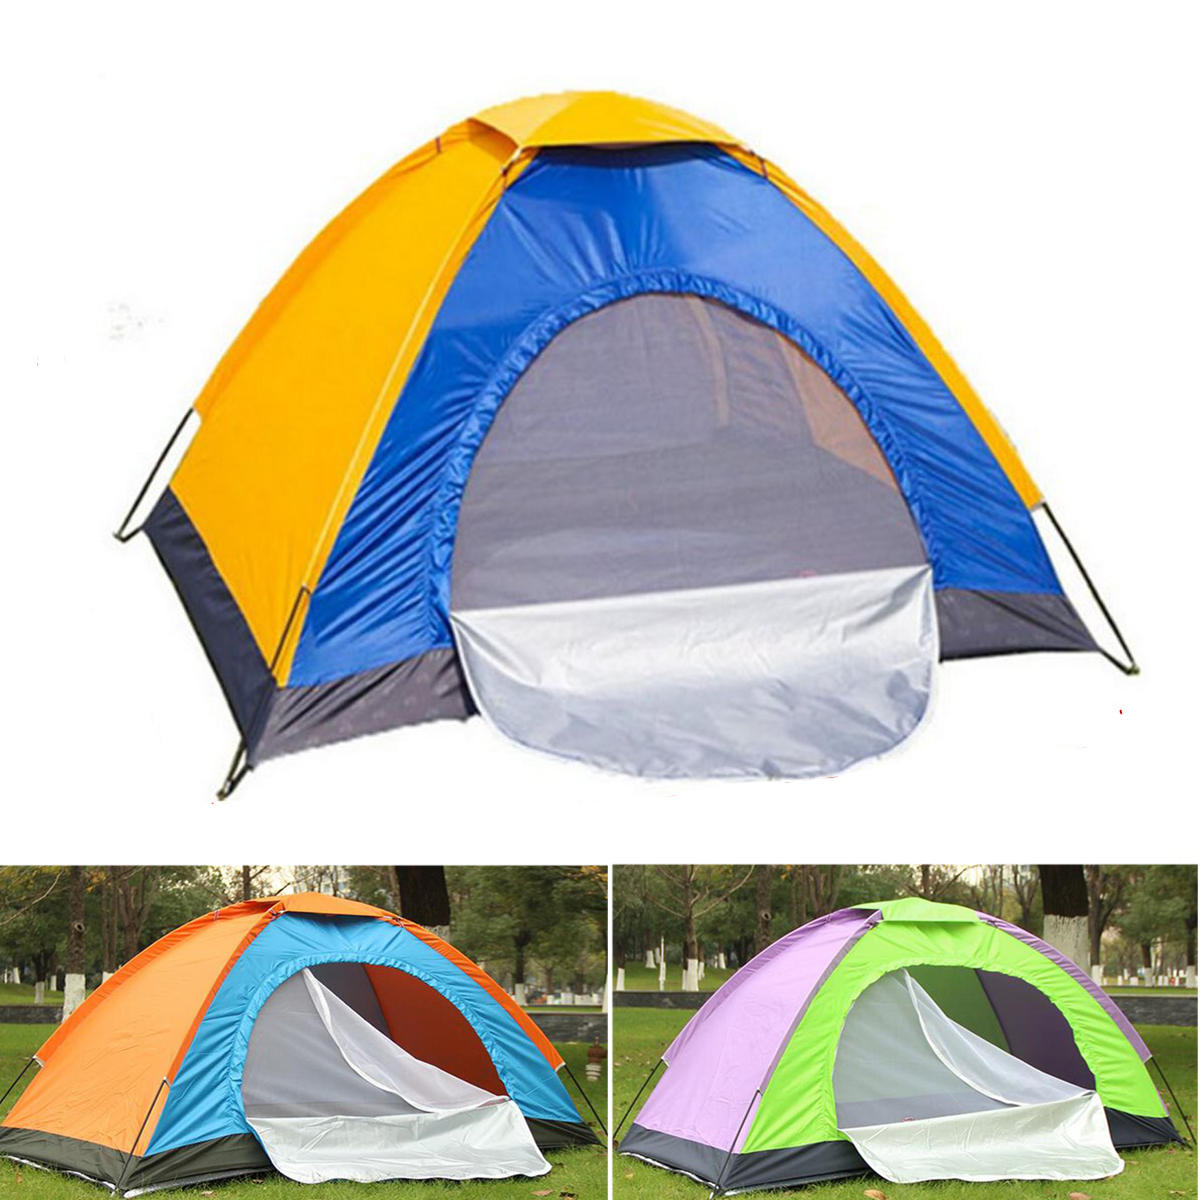 Tragbares Einzelzelt für Camping im Freien, wasserdicht, Sonnenschutz am Strand